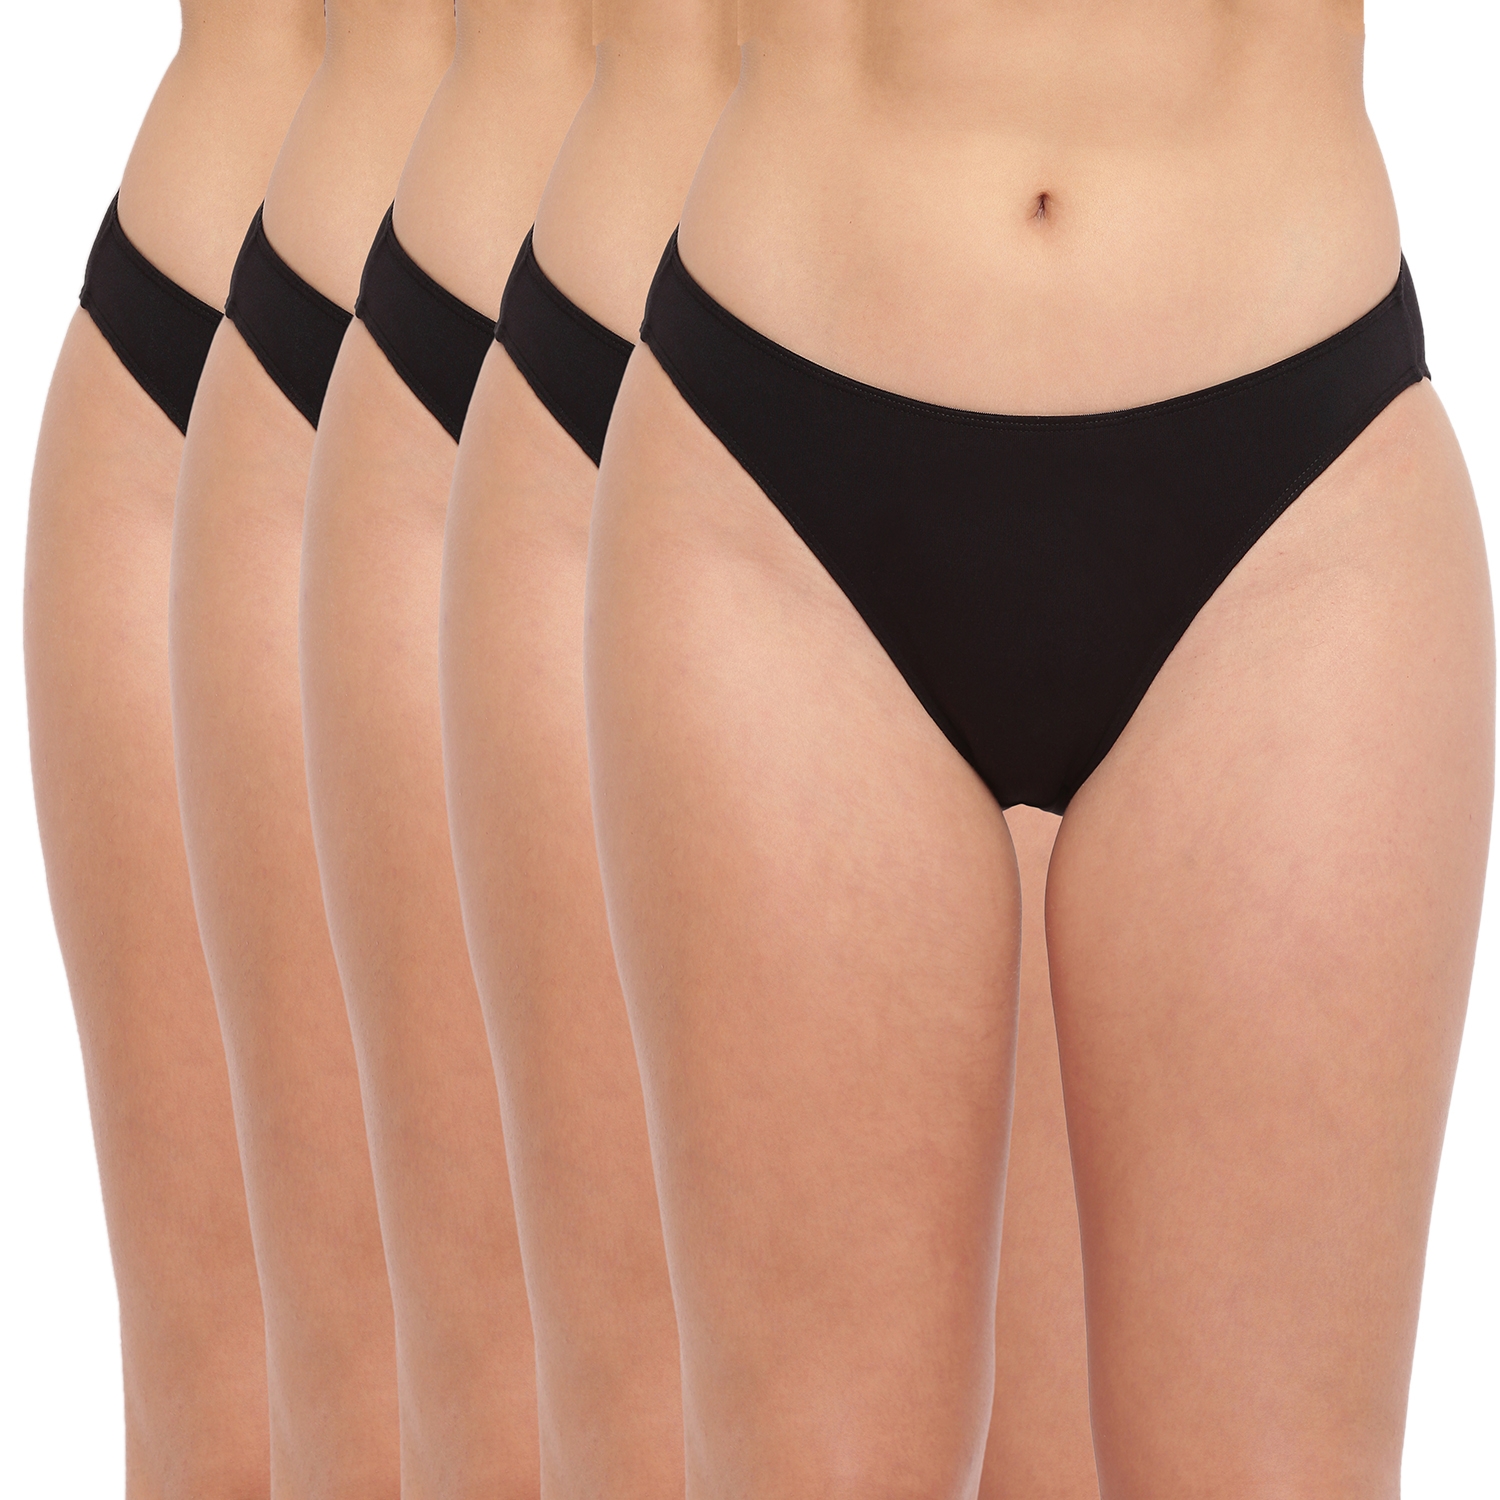 BASIICS by La Intimo | Black Glamo Rise High Leg Bikini Panty - Pack of 5